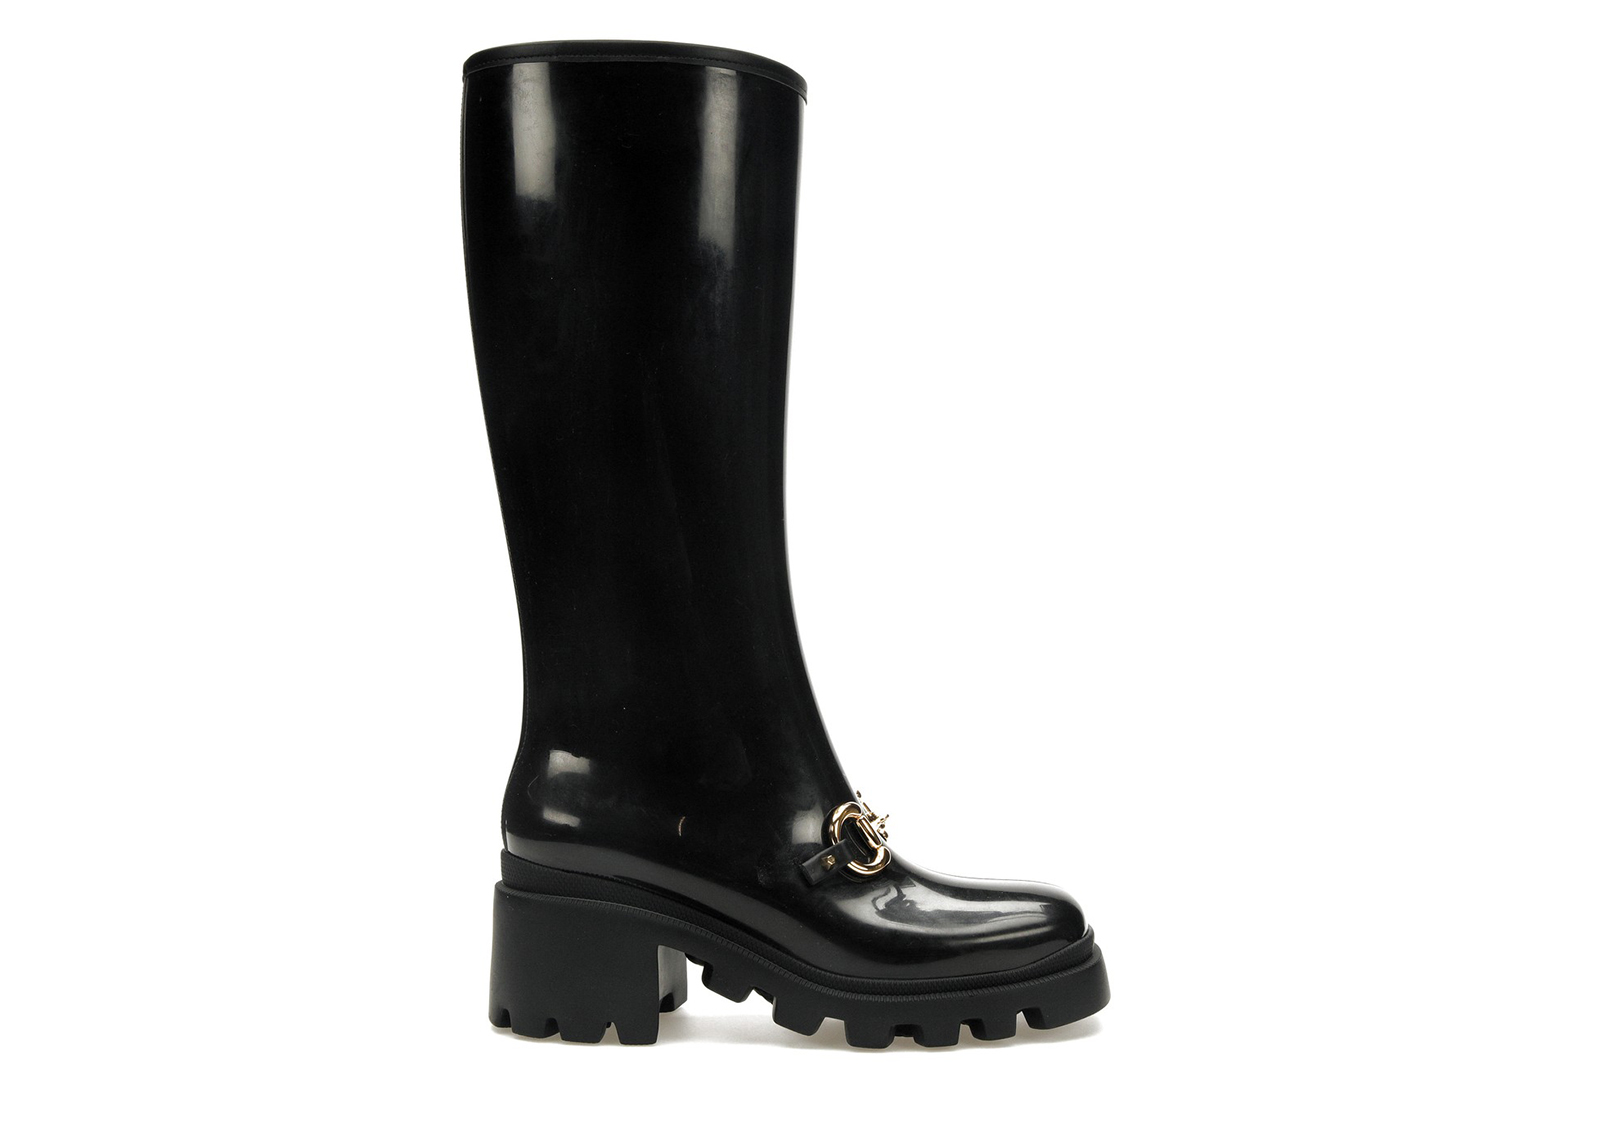 Gucci Horsebit Knee-High Boot Black Rubber (Women's) - 659707 